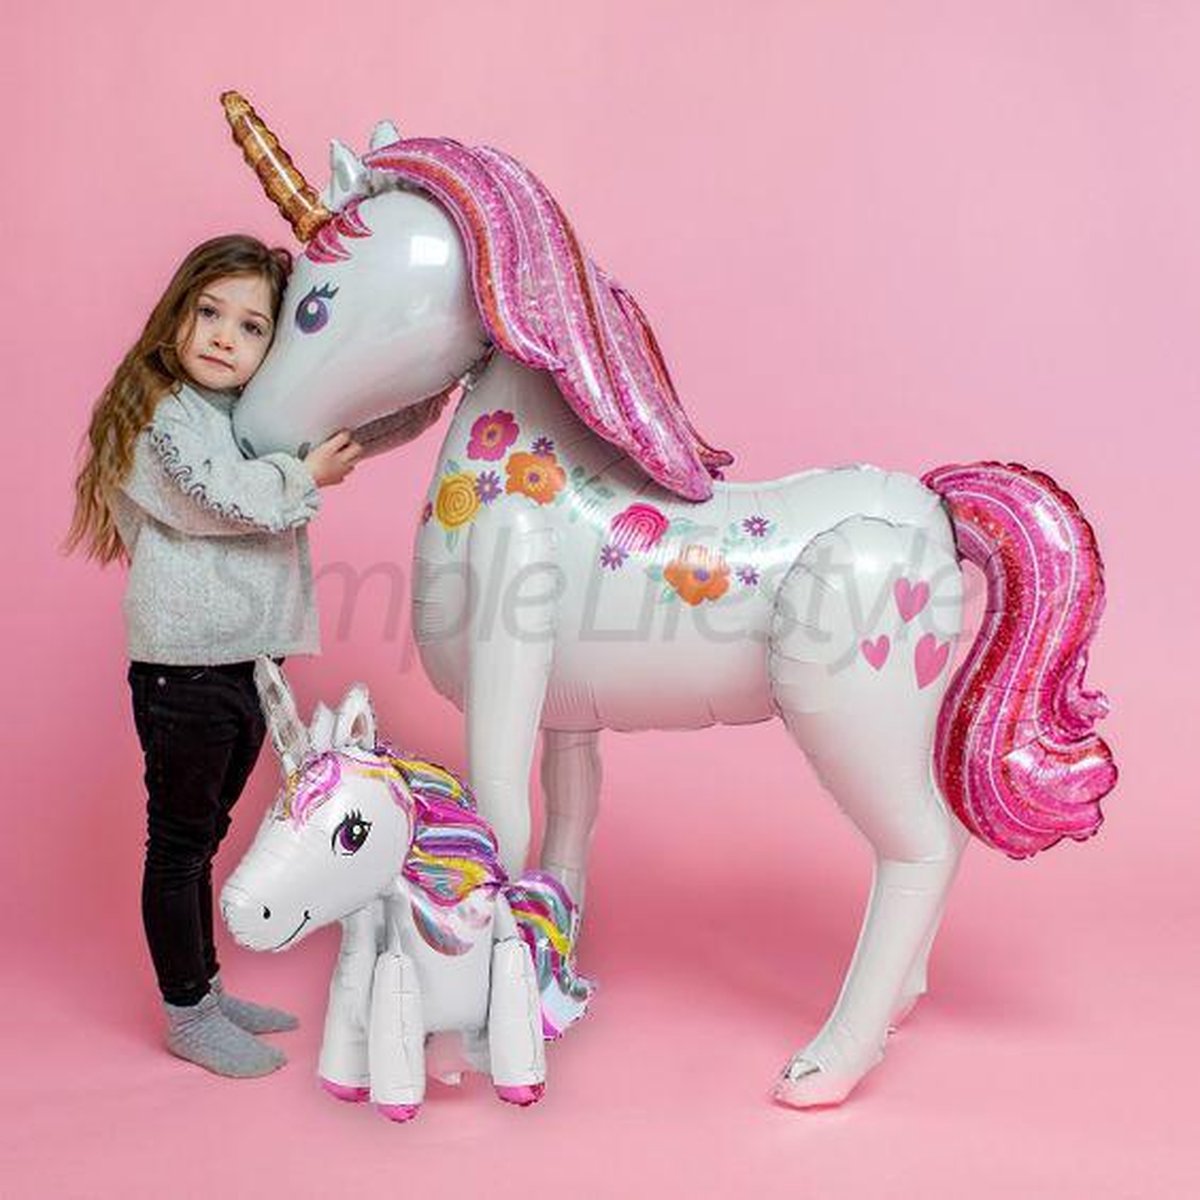 Unicorn Ballon XL 116cm + Kleine Eenhoorn 58cm Inclusief Opblaasrietje |Grote opblaasbare Paard Luxe Thema Party | Feestpakket Princess Prinses 3D Ballonnen | Verjaardag versiering - Kinderfeest - Celejoy